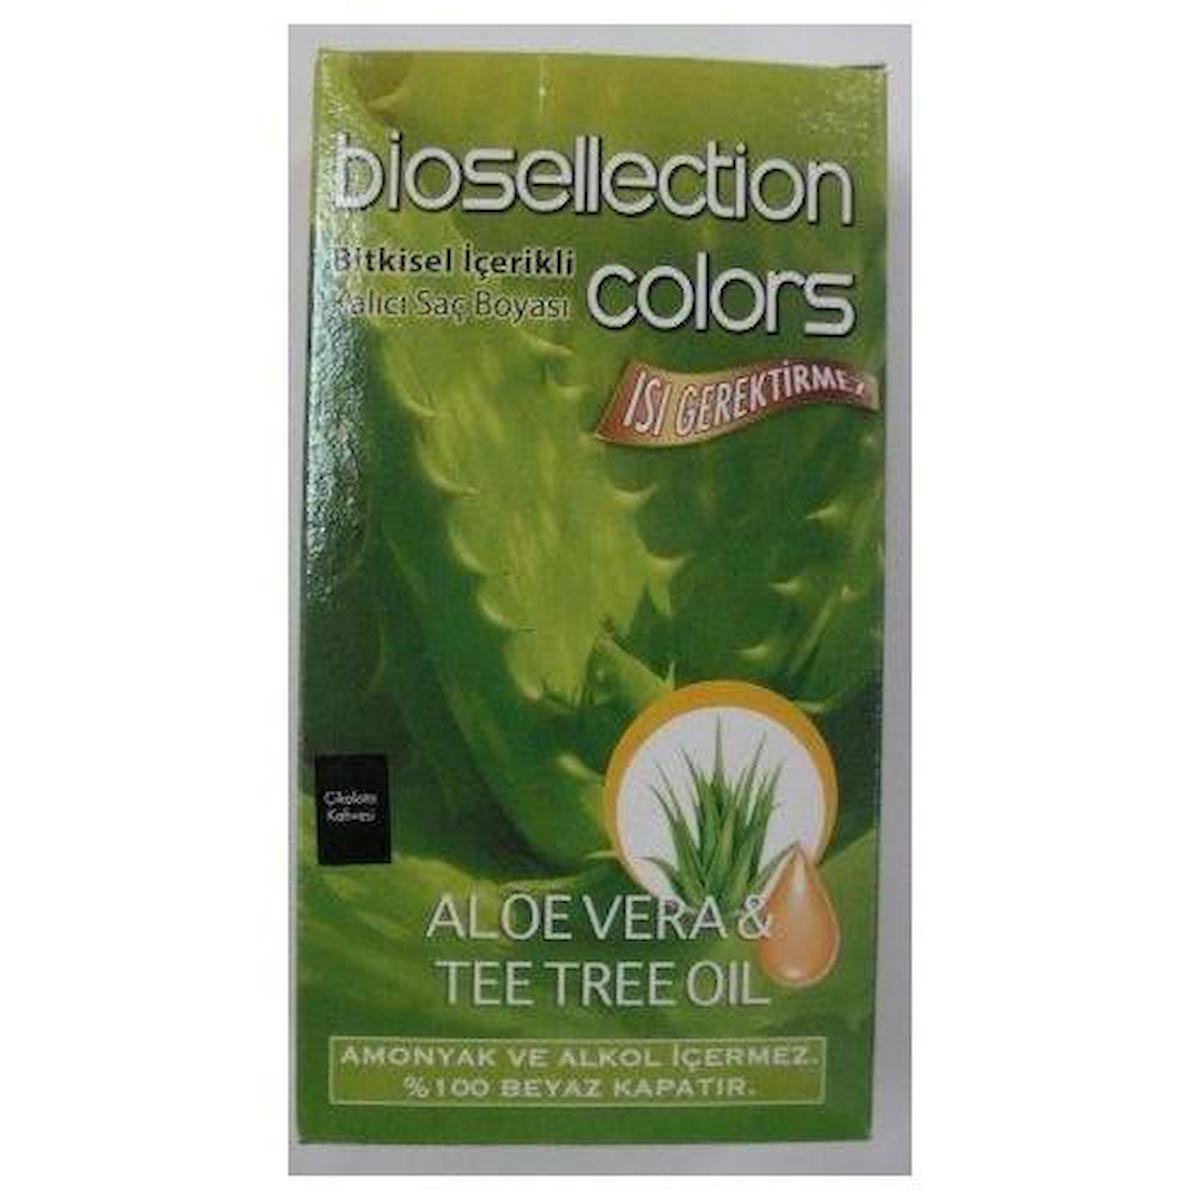 Biosellection 5.5 Akaju Kızıl Amonyaksız Krem Saç Boyası